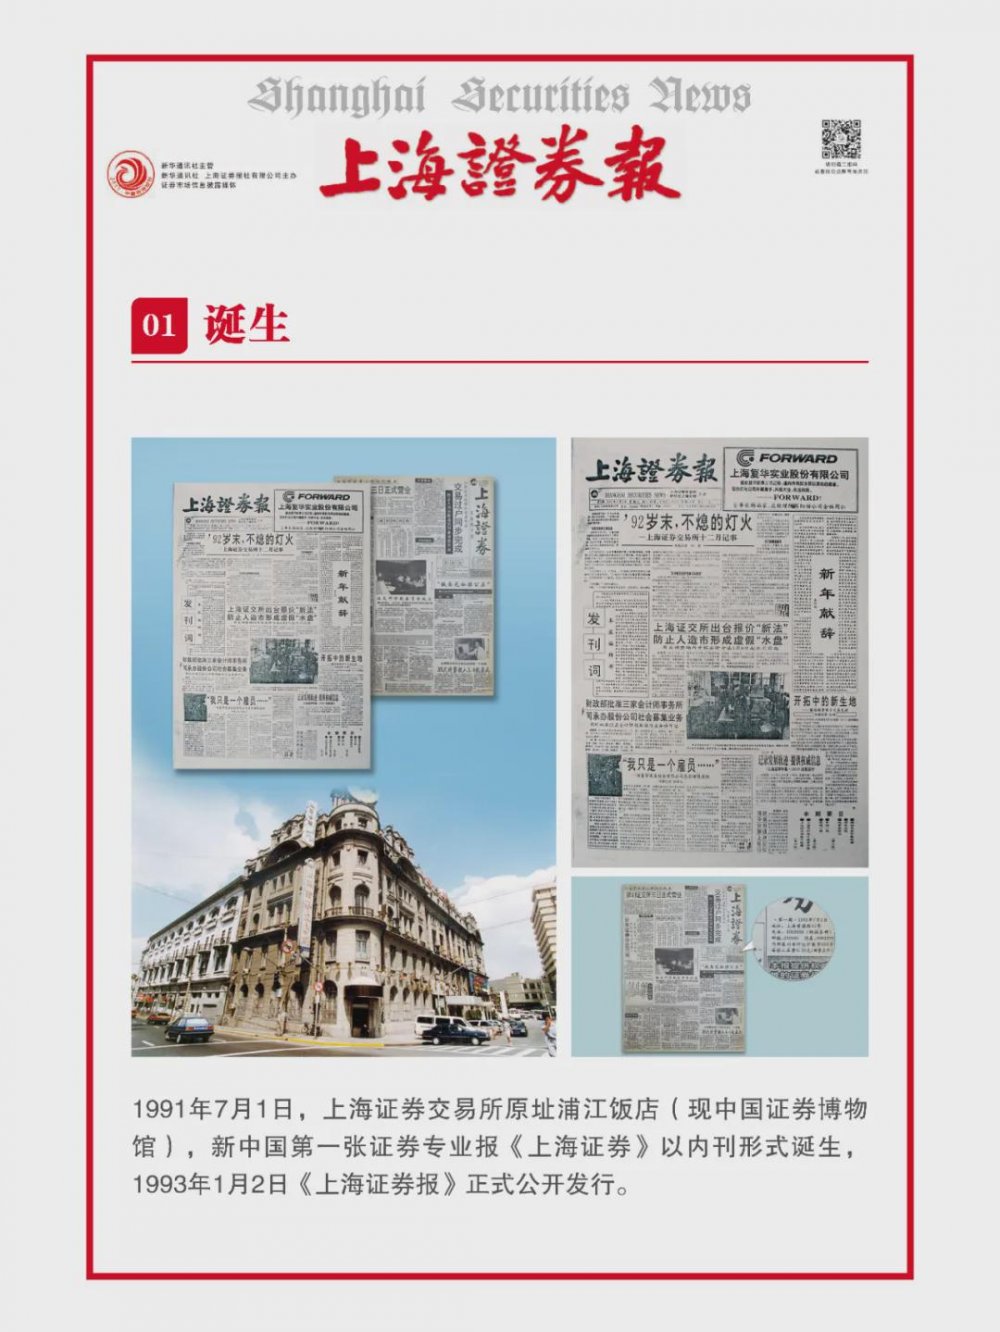 NFT китайских государственных газет растут в цене на вторичном рынке